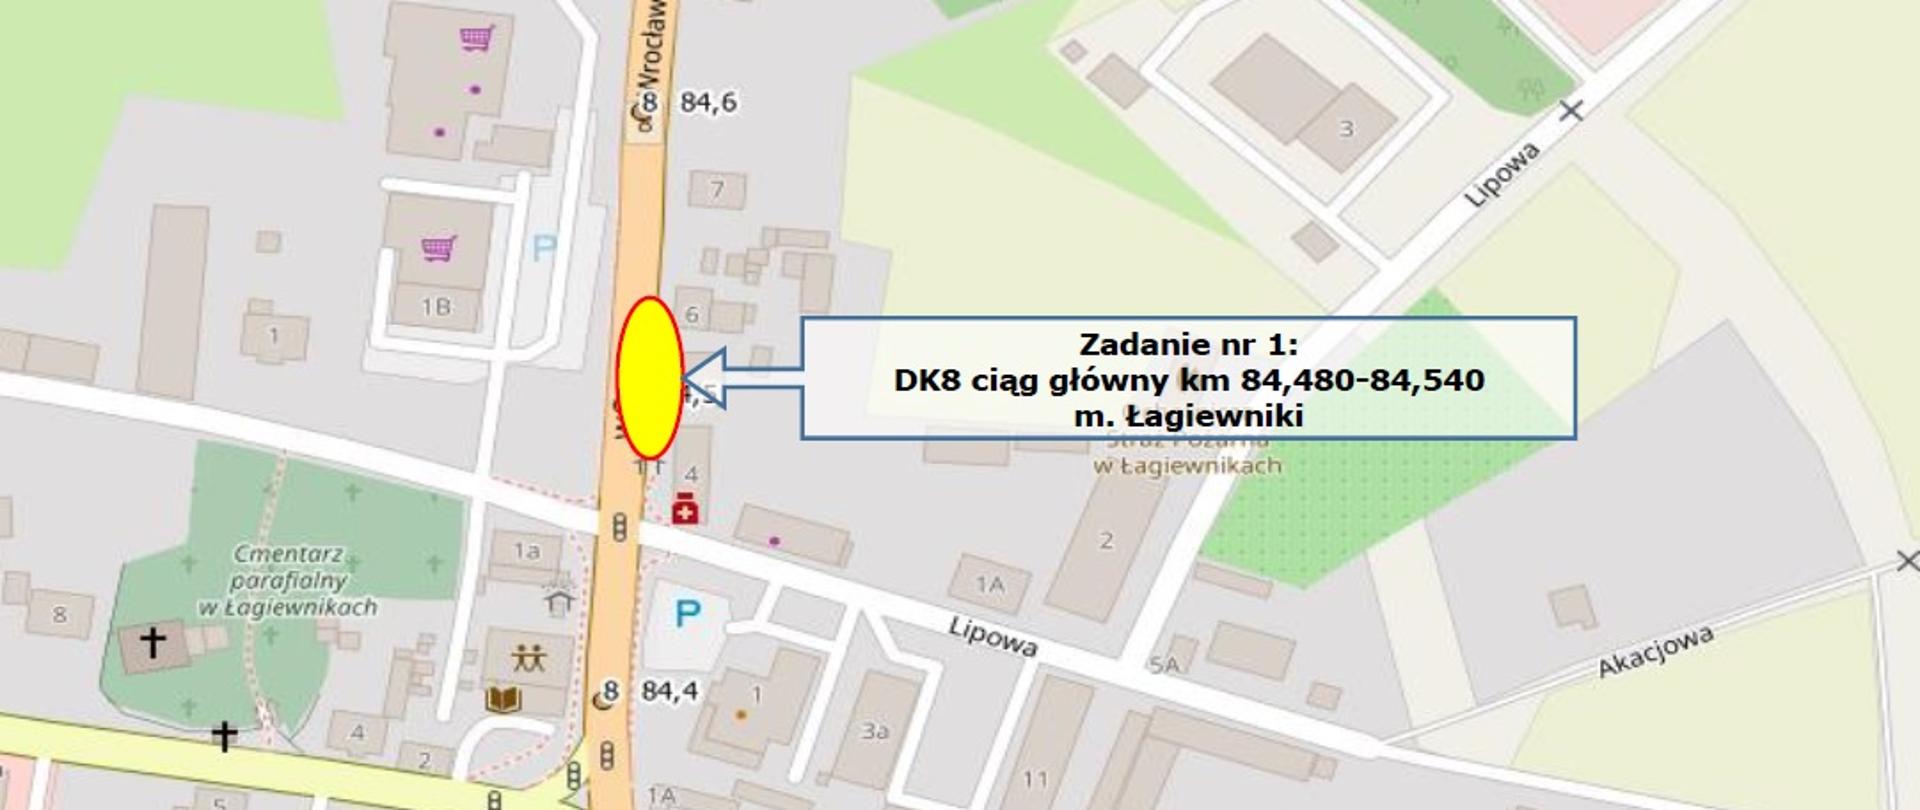 DK8 Łagiewniki - mapa z lokalizacją zadania 